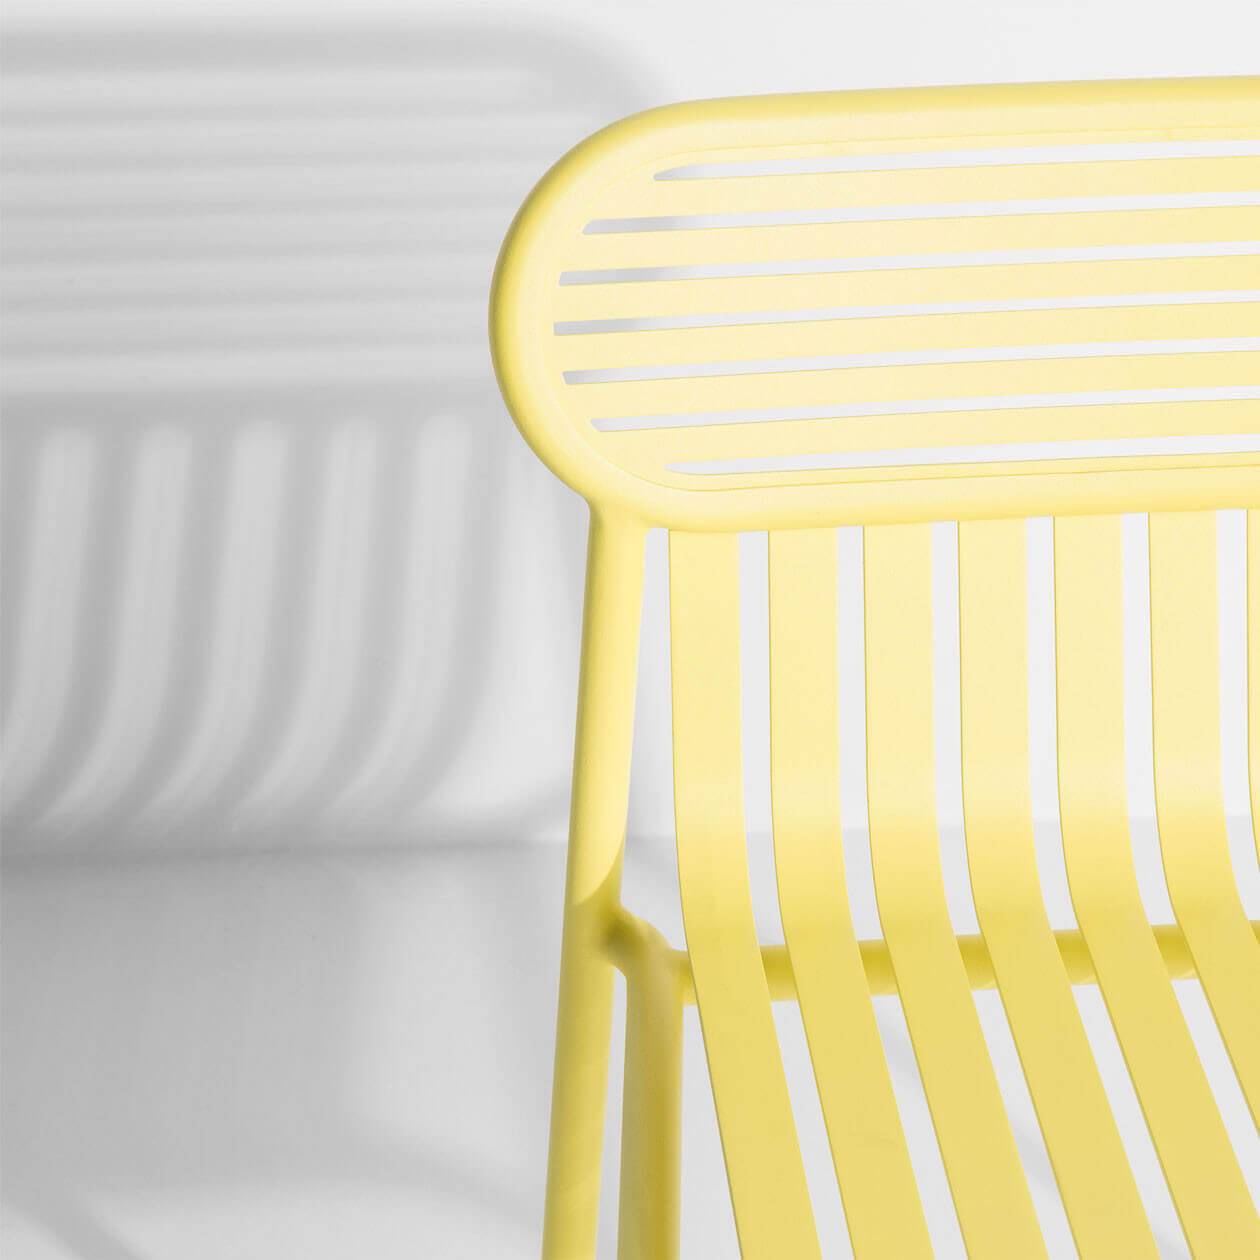 Week-End Gartenstuhl in Yellow präsentiert im Onlineshop von KAQTU Design AG. Gartenstuhl ist von Petite Friture